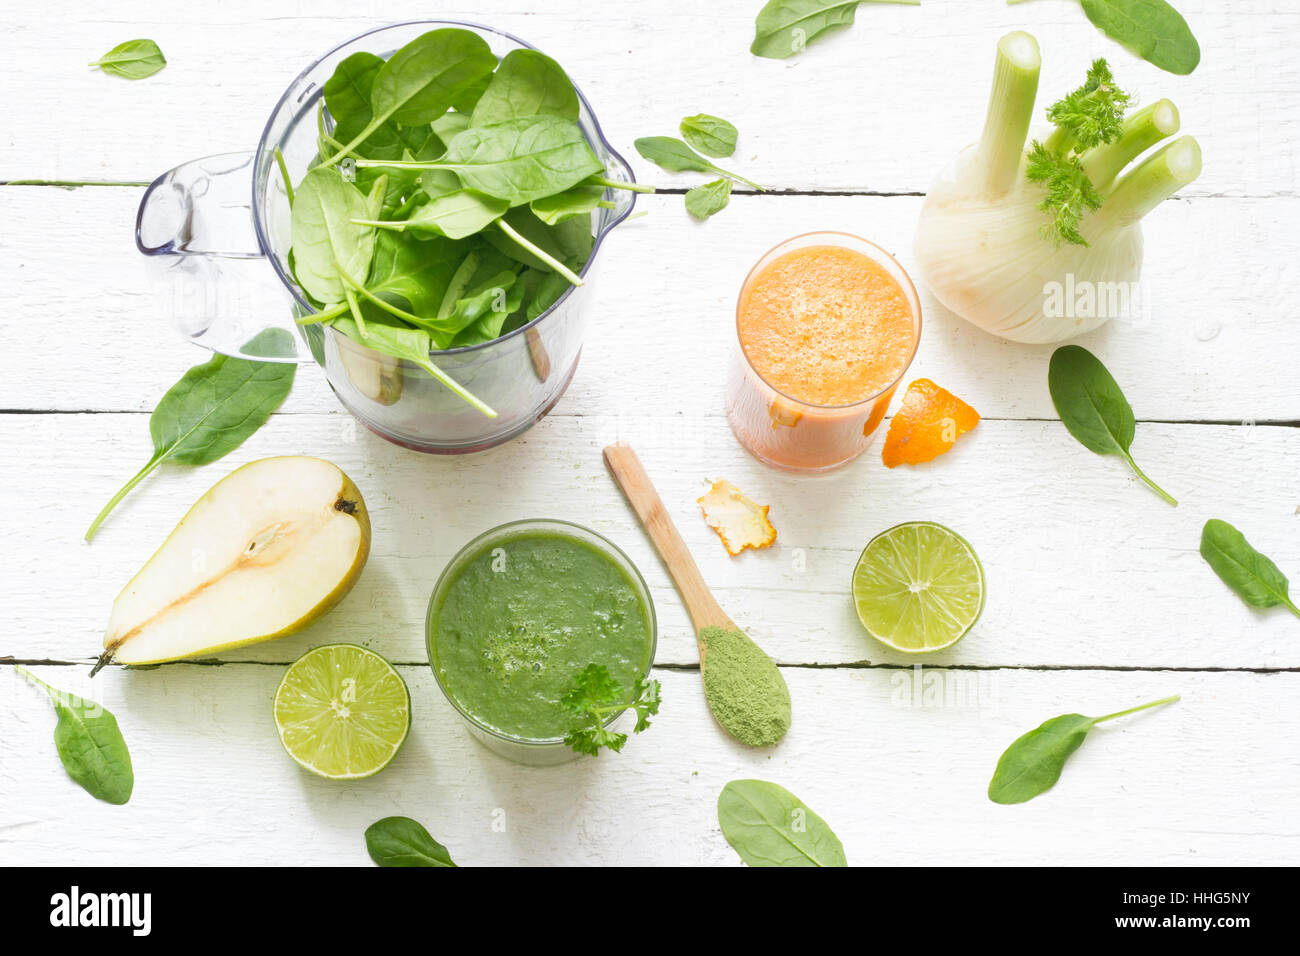 Obst, Gemüse, Smoothie, Mixer, abstrakte Gesundheit-Ernährung-Lifestyle-Konzept Stockfoto